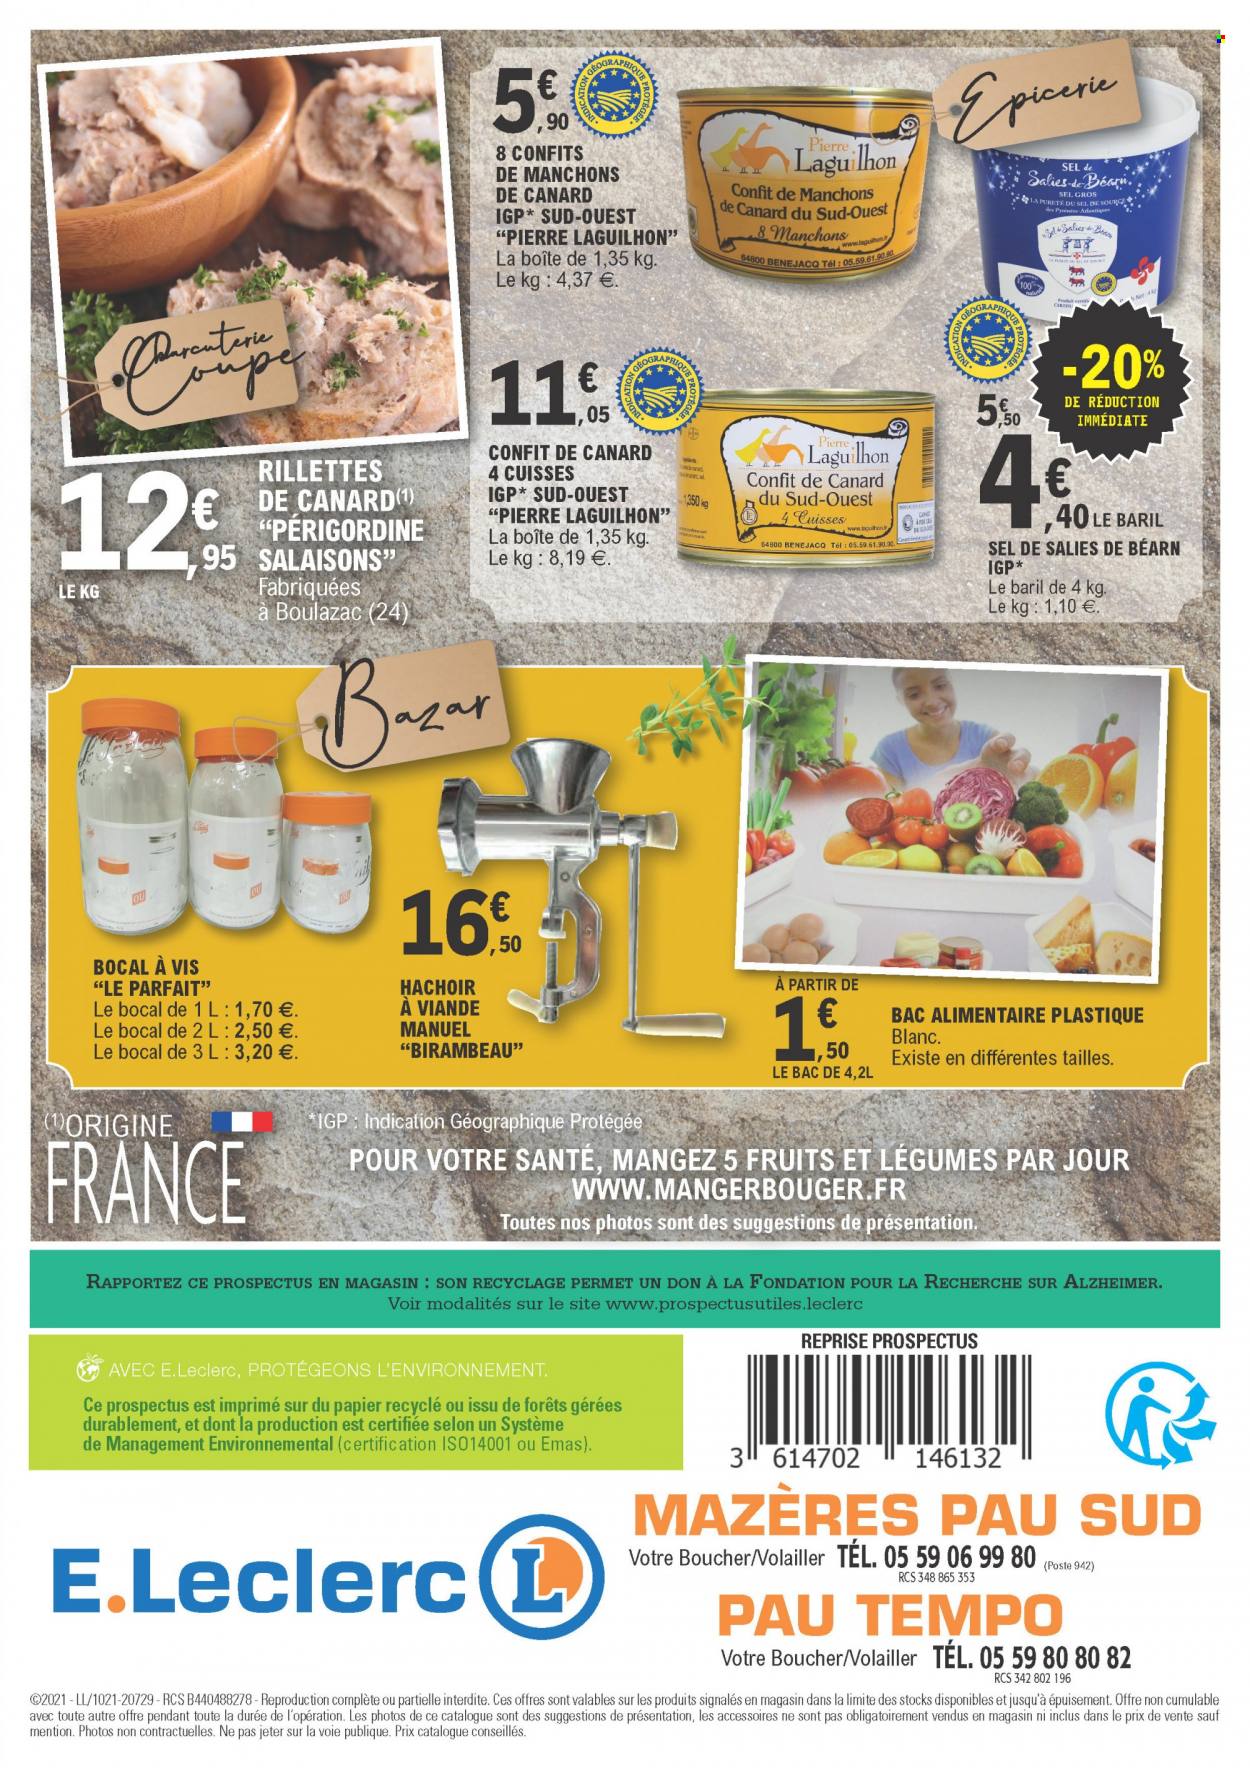 thumbnail - Catalogue E.Leclerc - 24/11/2021 - 05/12/2021 - Produits soldés - manchons de canard, rillettes, confit de canard, rillettes de canard, hachoir, vis. Page 4.